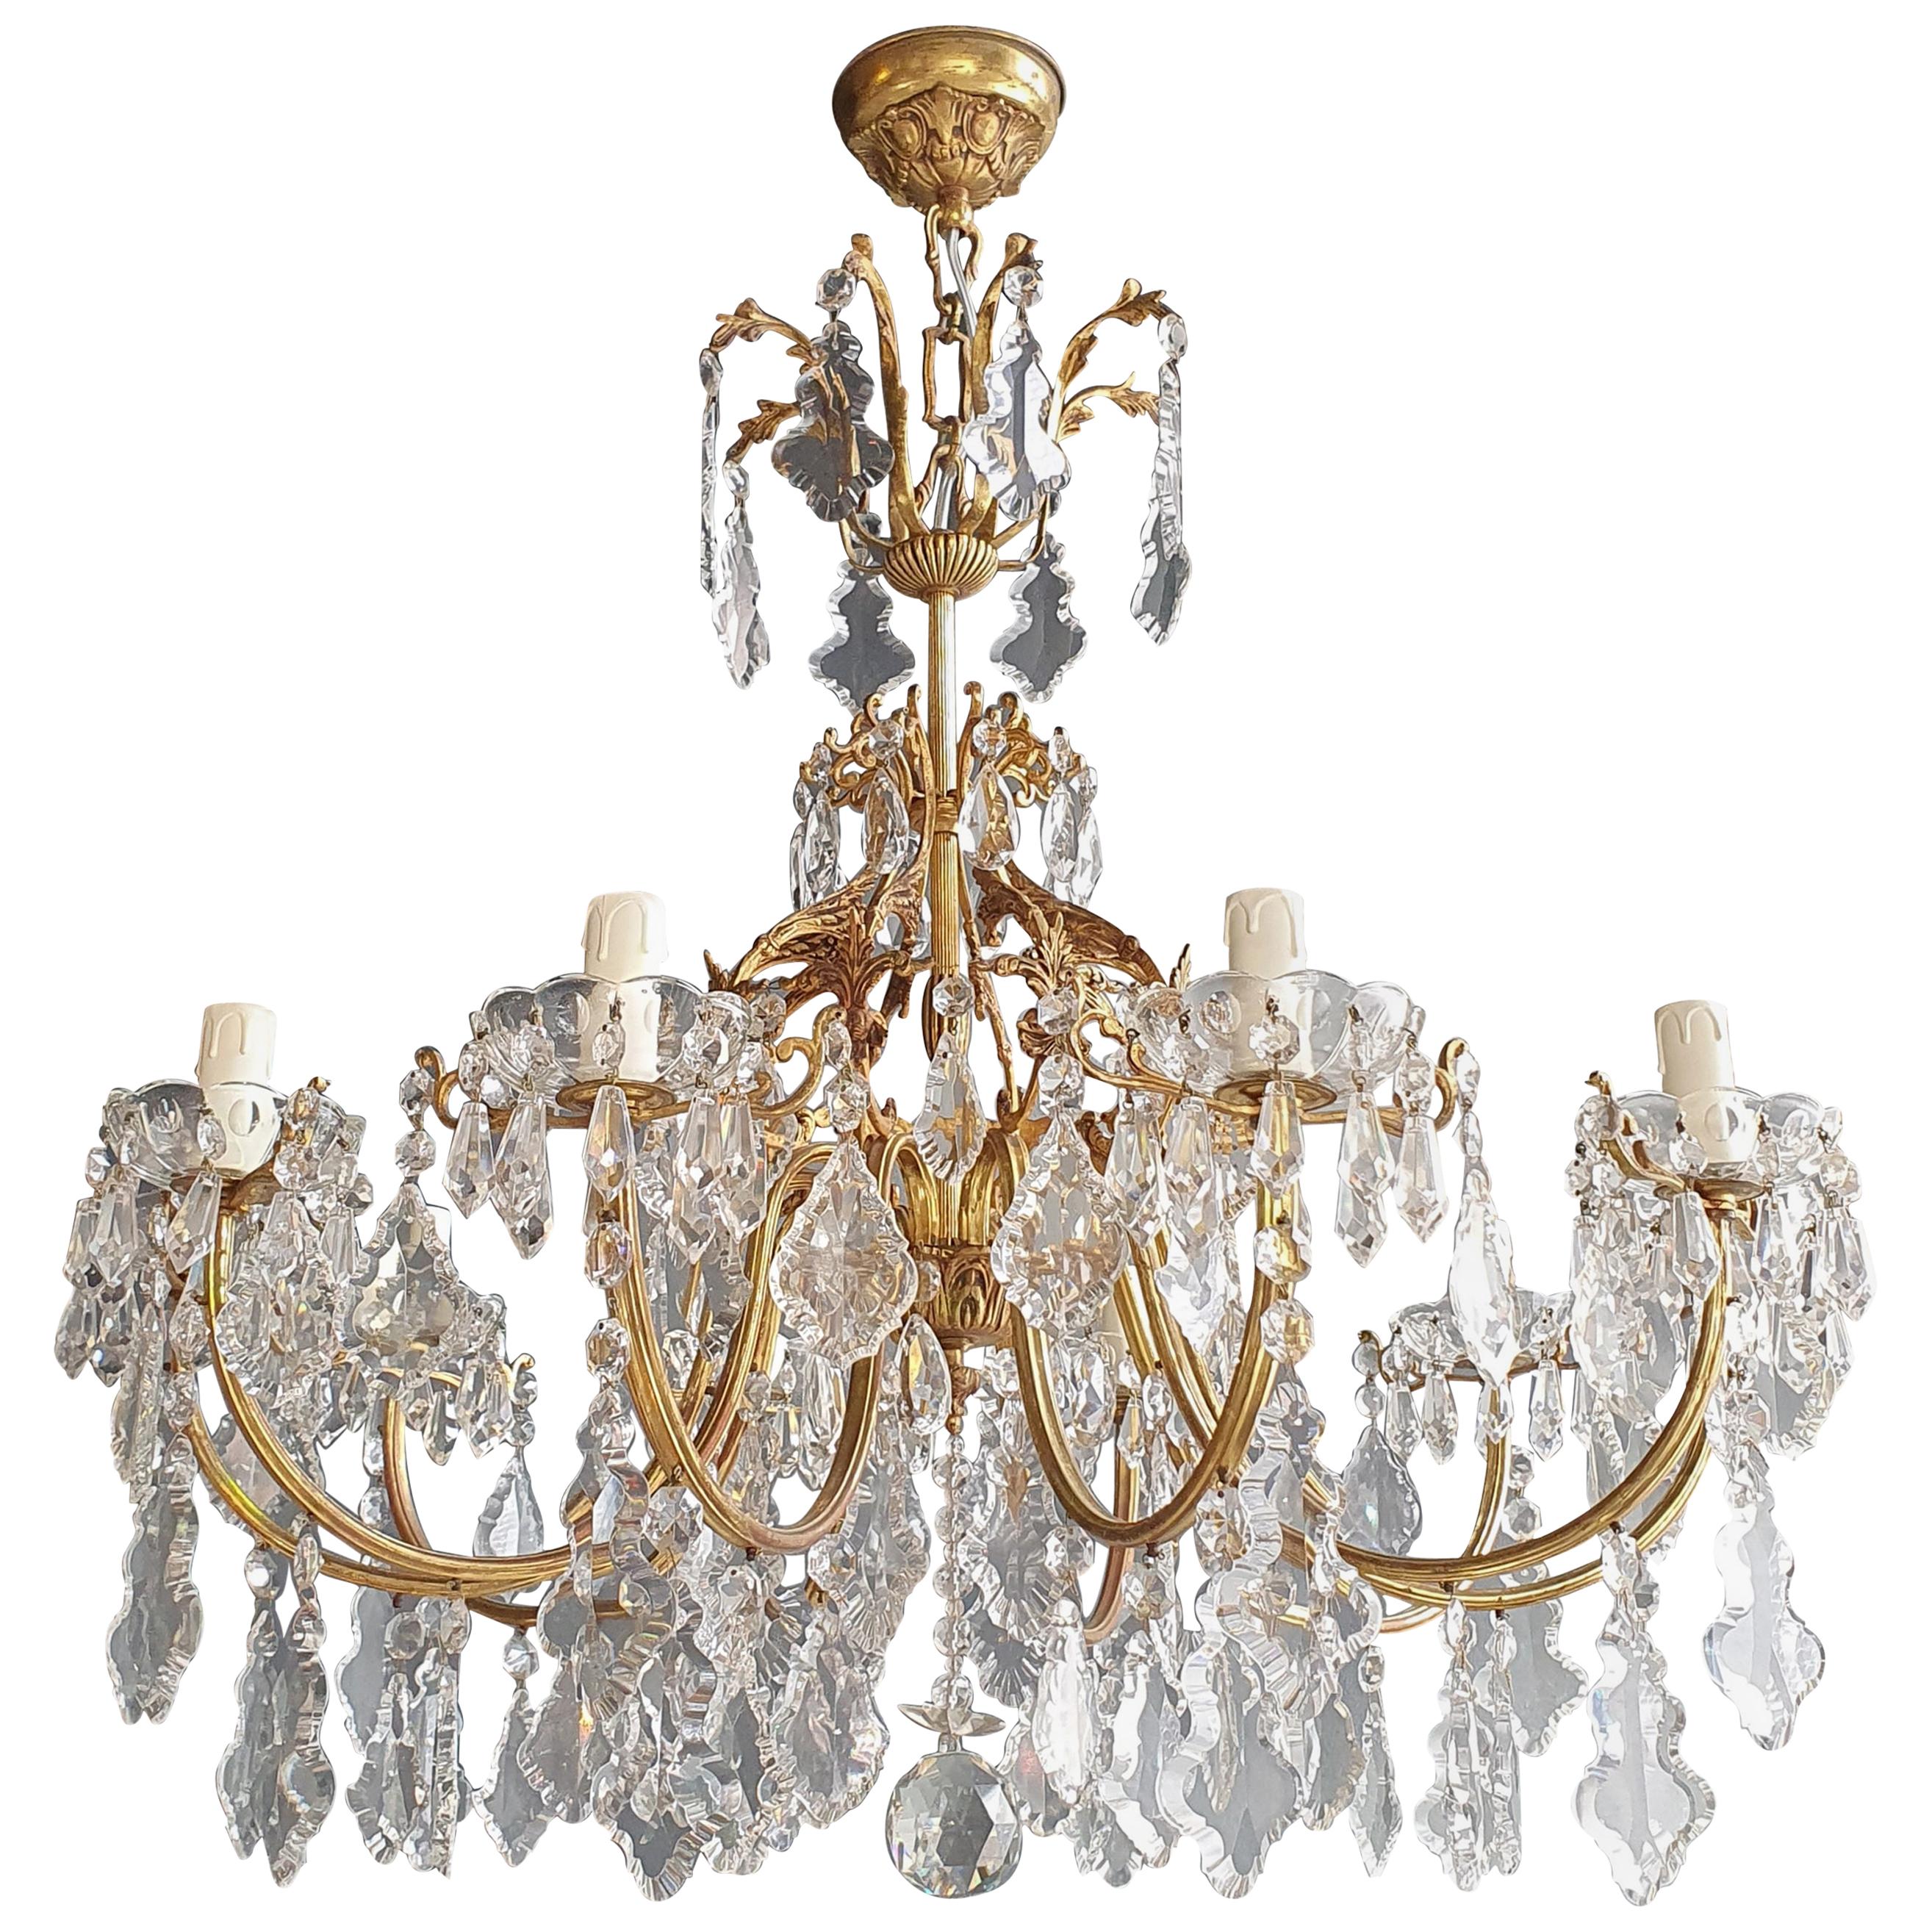 Brass Crystal Chandelier Antique Ceiling Lamp Lustre Art Nouveau Lamp